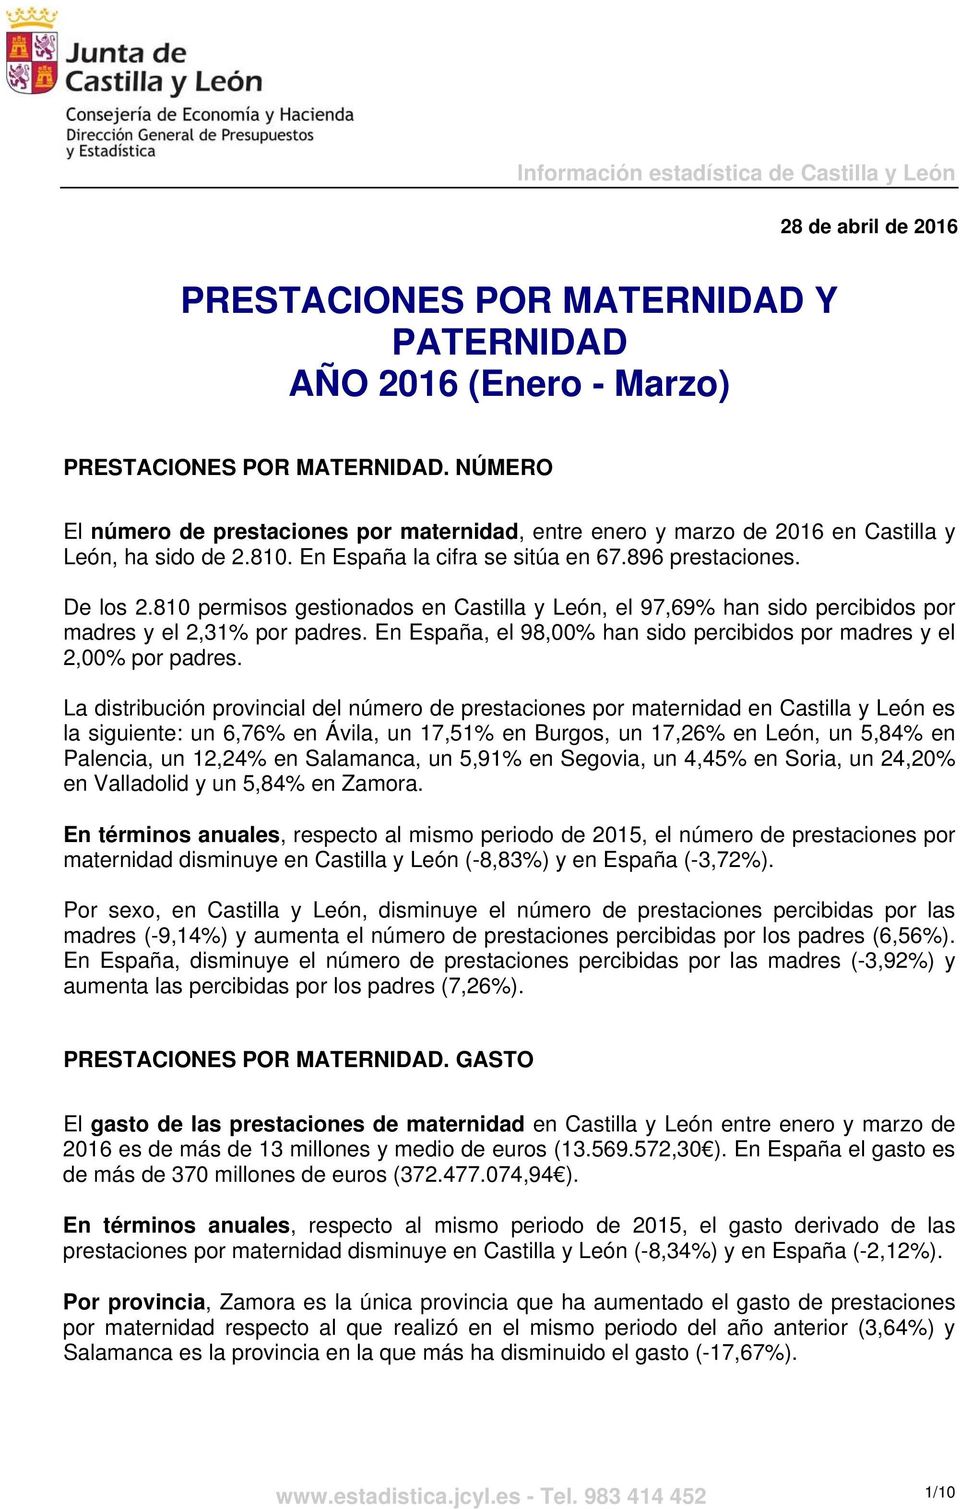 810 permisos gestionados en Castilla y León, el 97,69% han sido percibidos por madres y el 2,31% por padres. En España, el 98,00% han sido percibidos por madres y el 2,00% por padres.